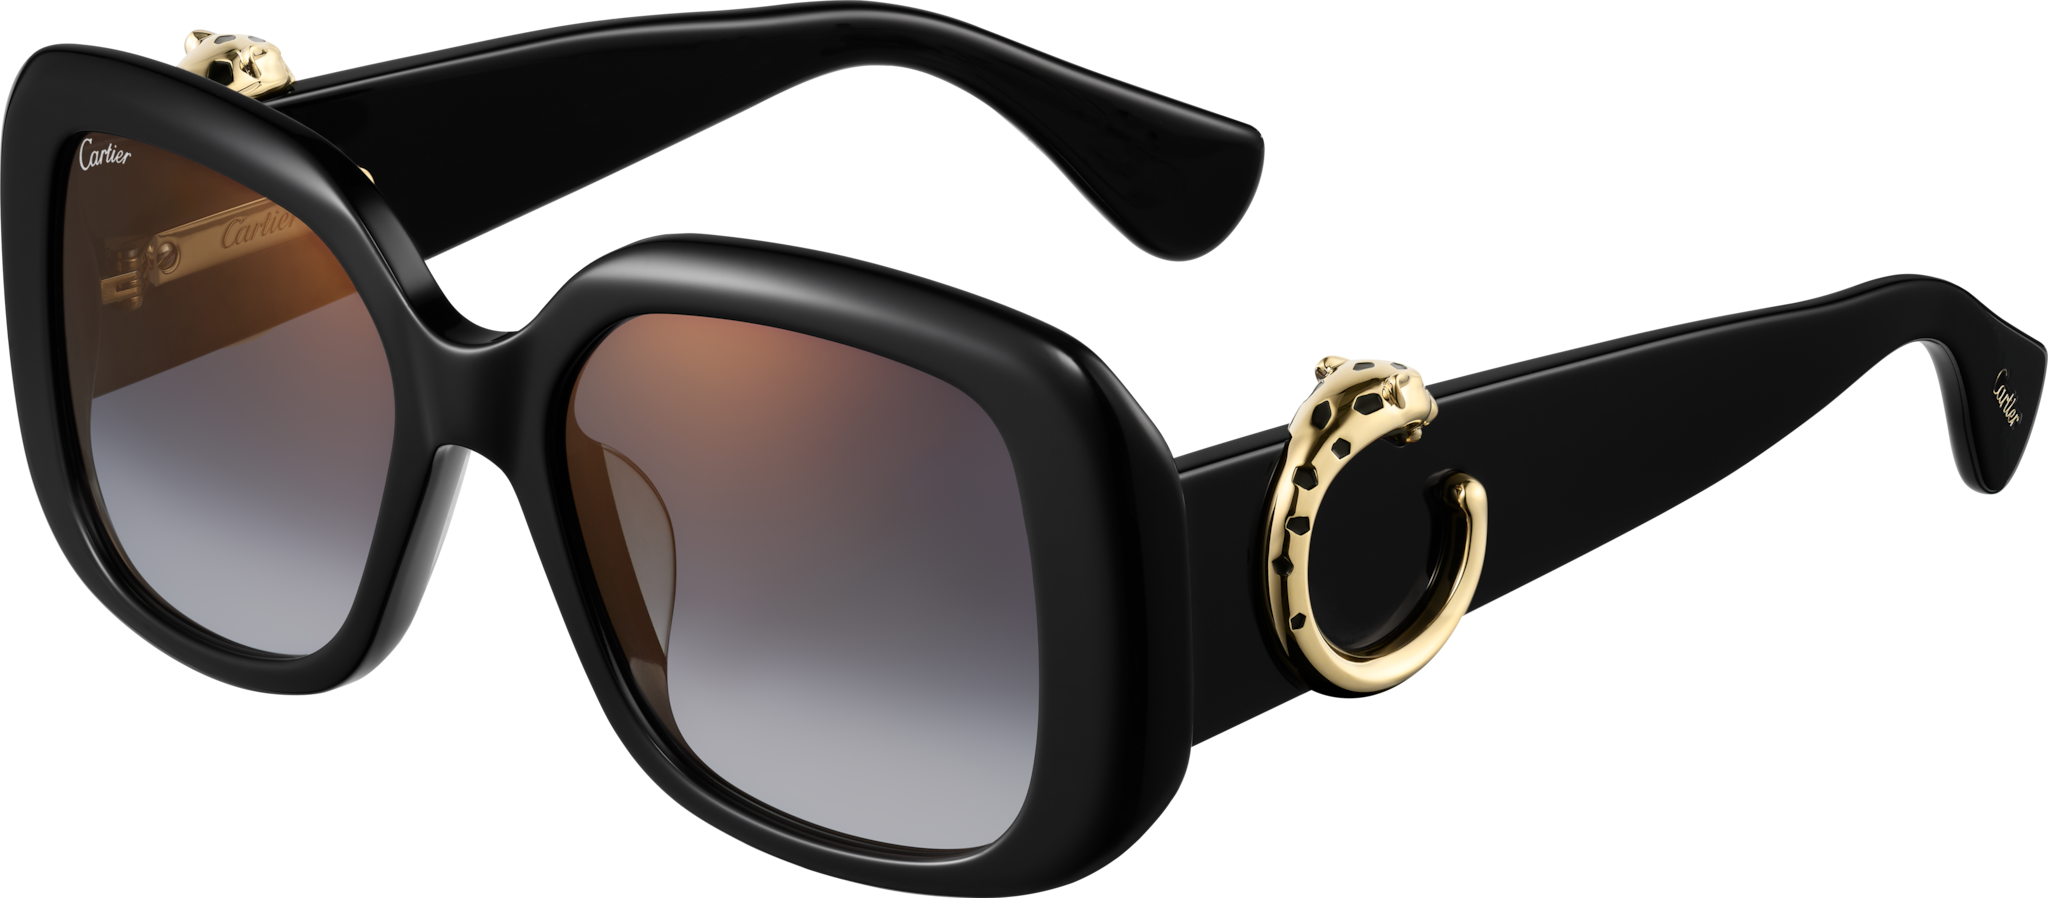 Panthère de Cartier SunglassesBlack composite, grey lenses 